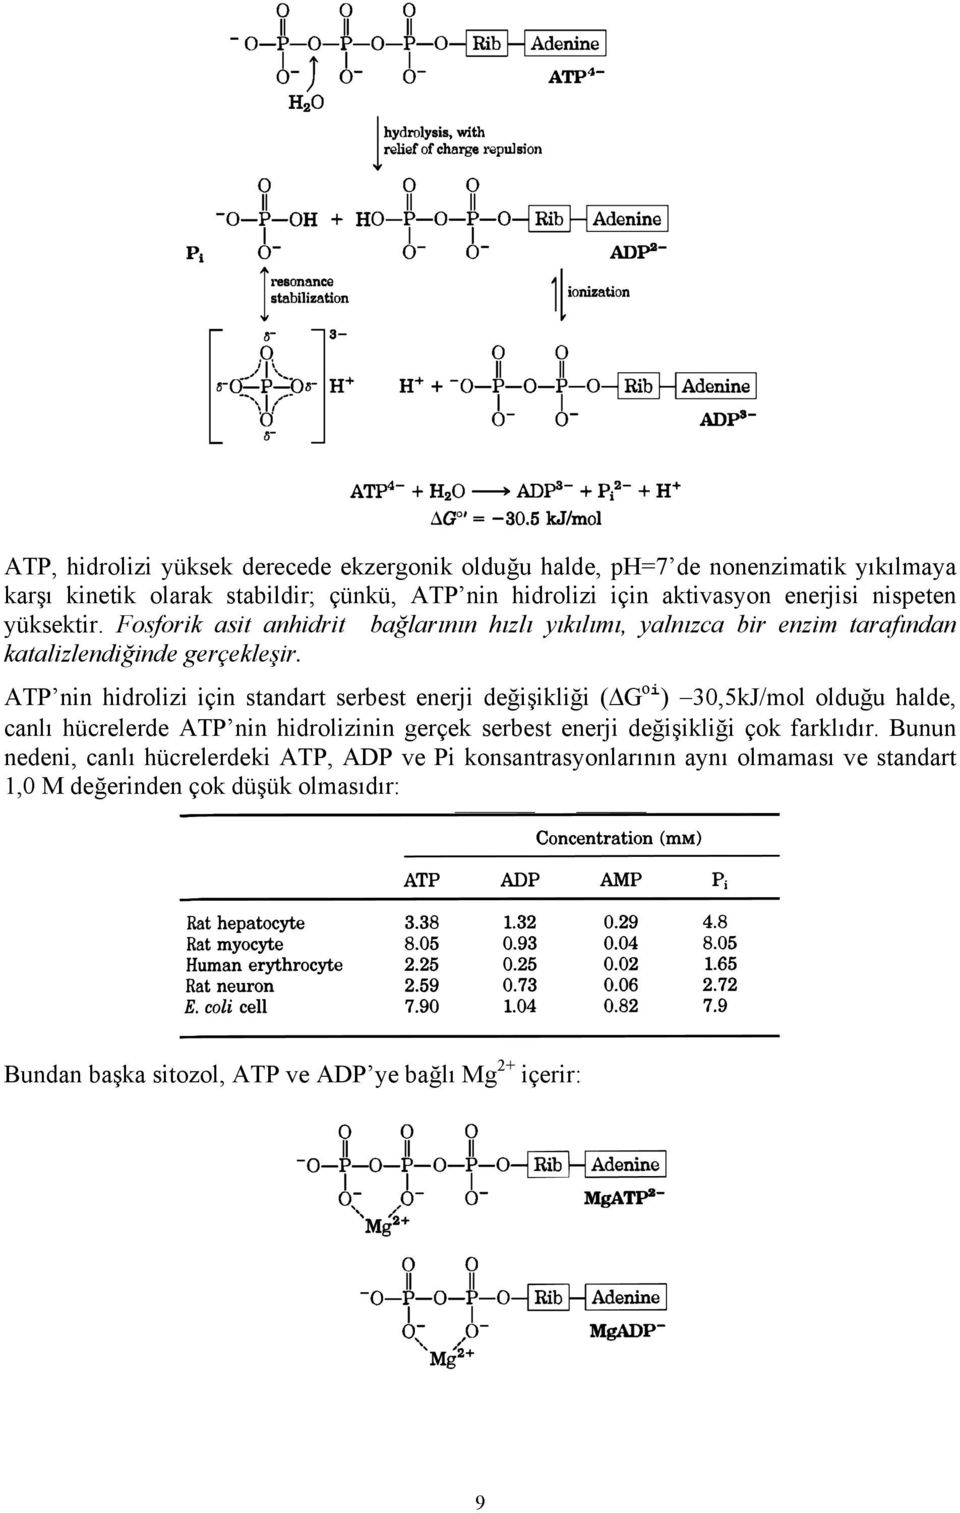 ATP nin hidrolizi için standart serbest enerji değişikliği ( G oi ) 30,5kJ/mol olduğu halde, canlı hücrelerde ATP nin hidrolizinin gerçek serbest enerji değişikliği